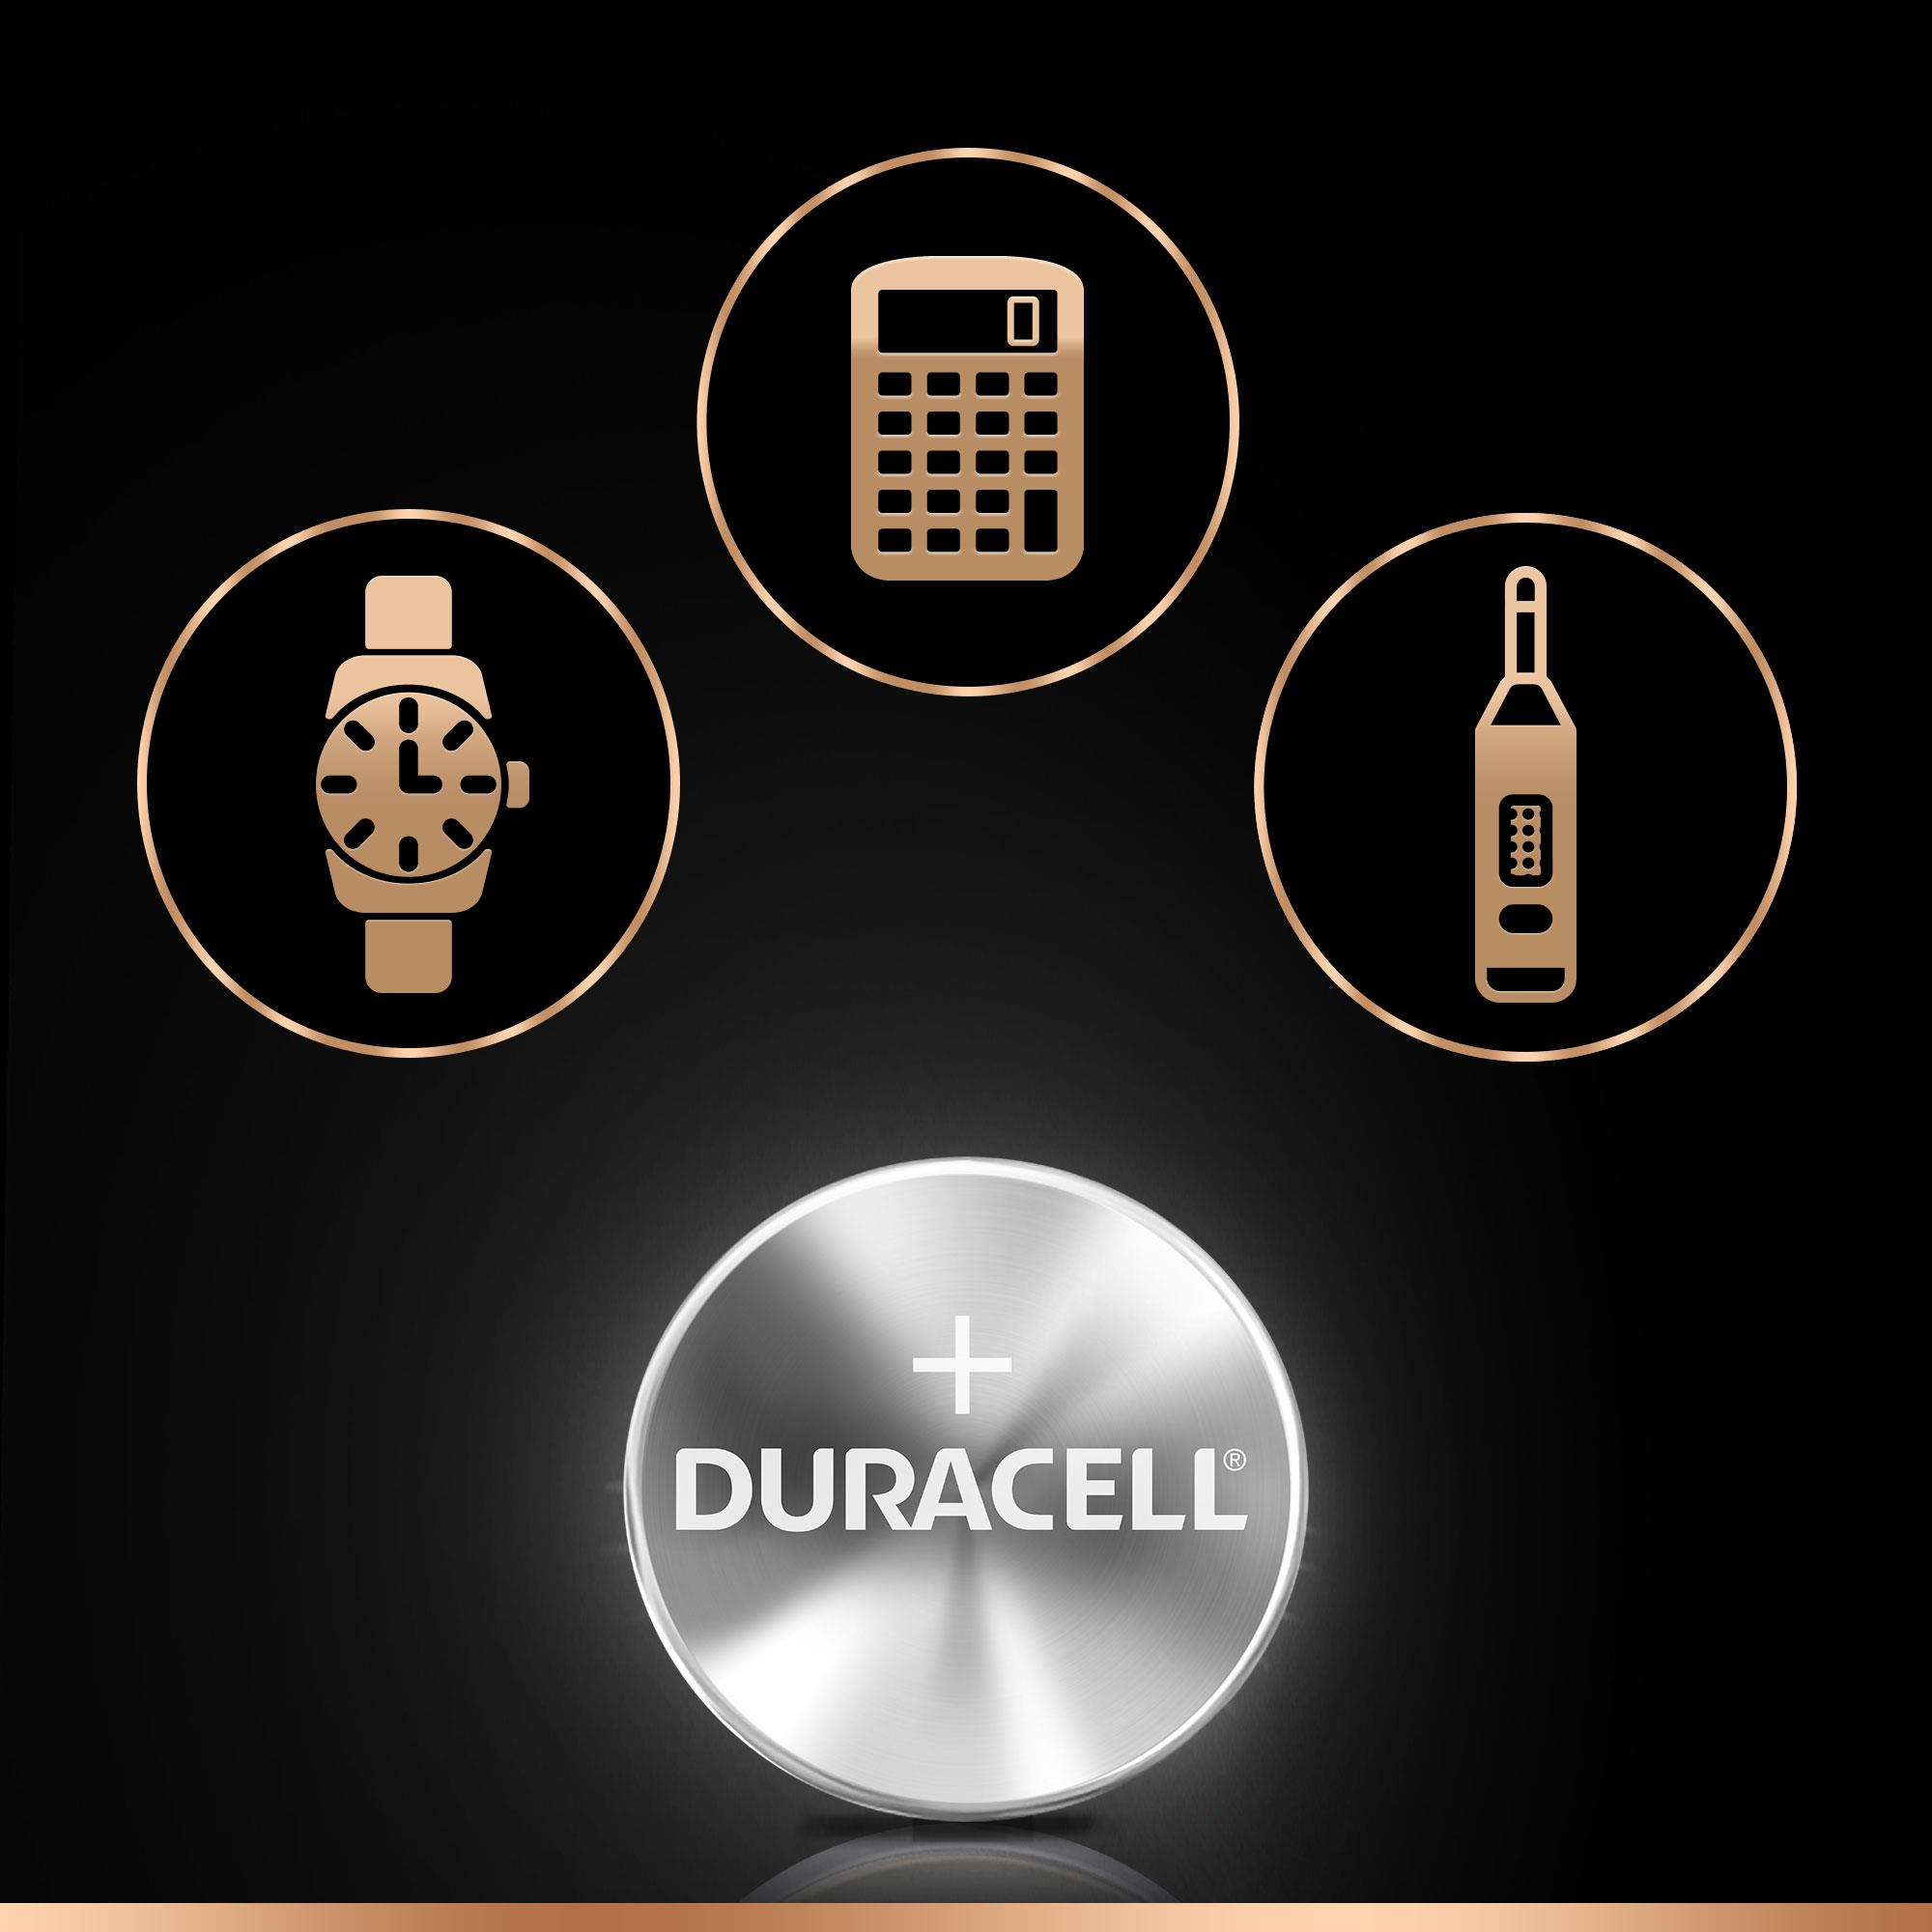 DURACELL Specialty 377 Batterie, Stück 1 Volt 1.5 Silber-Oxid